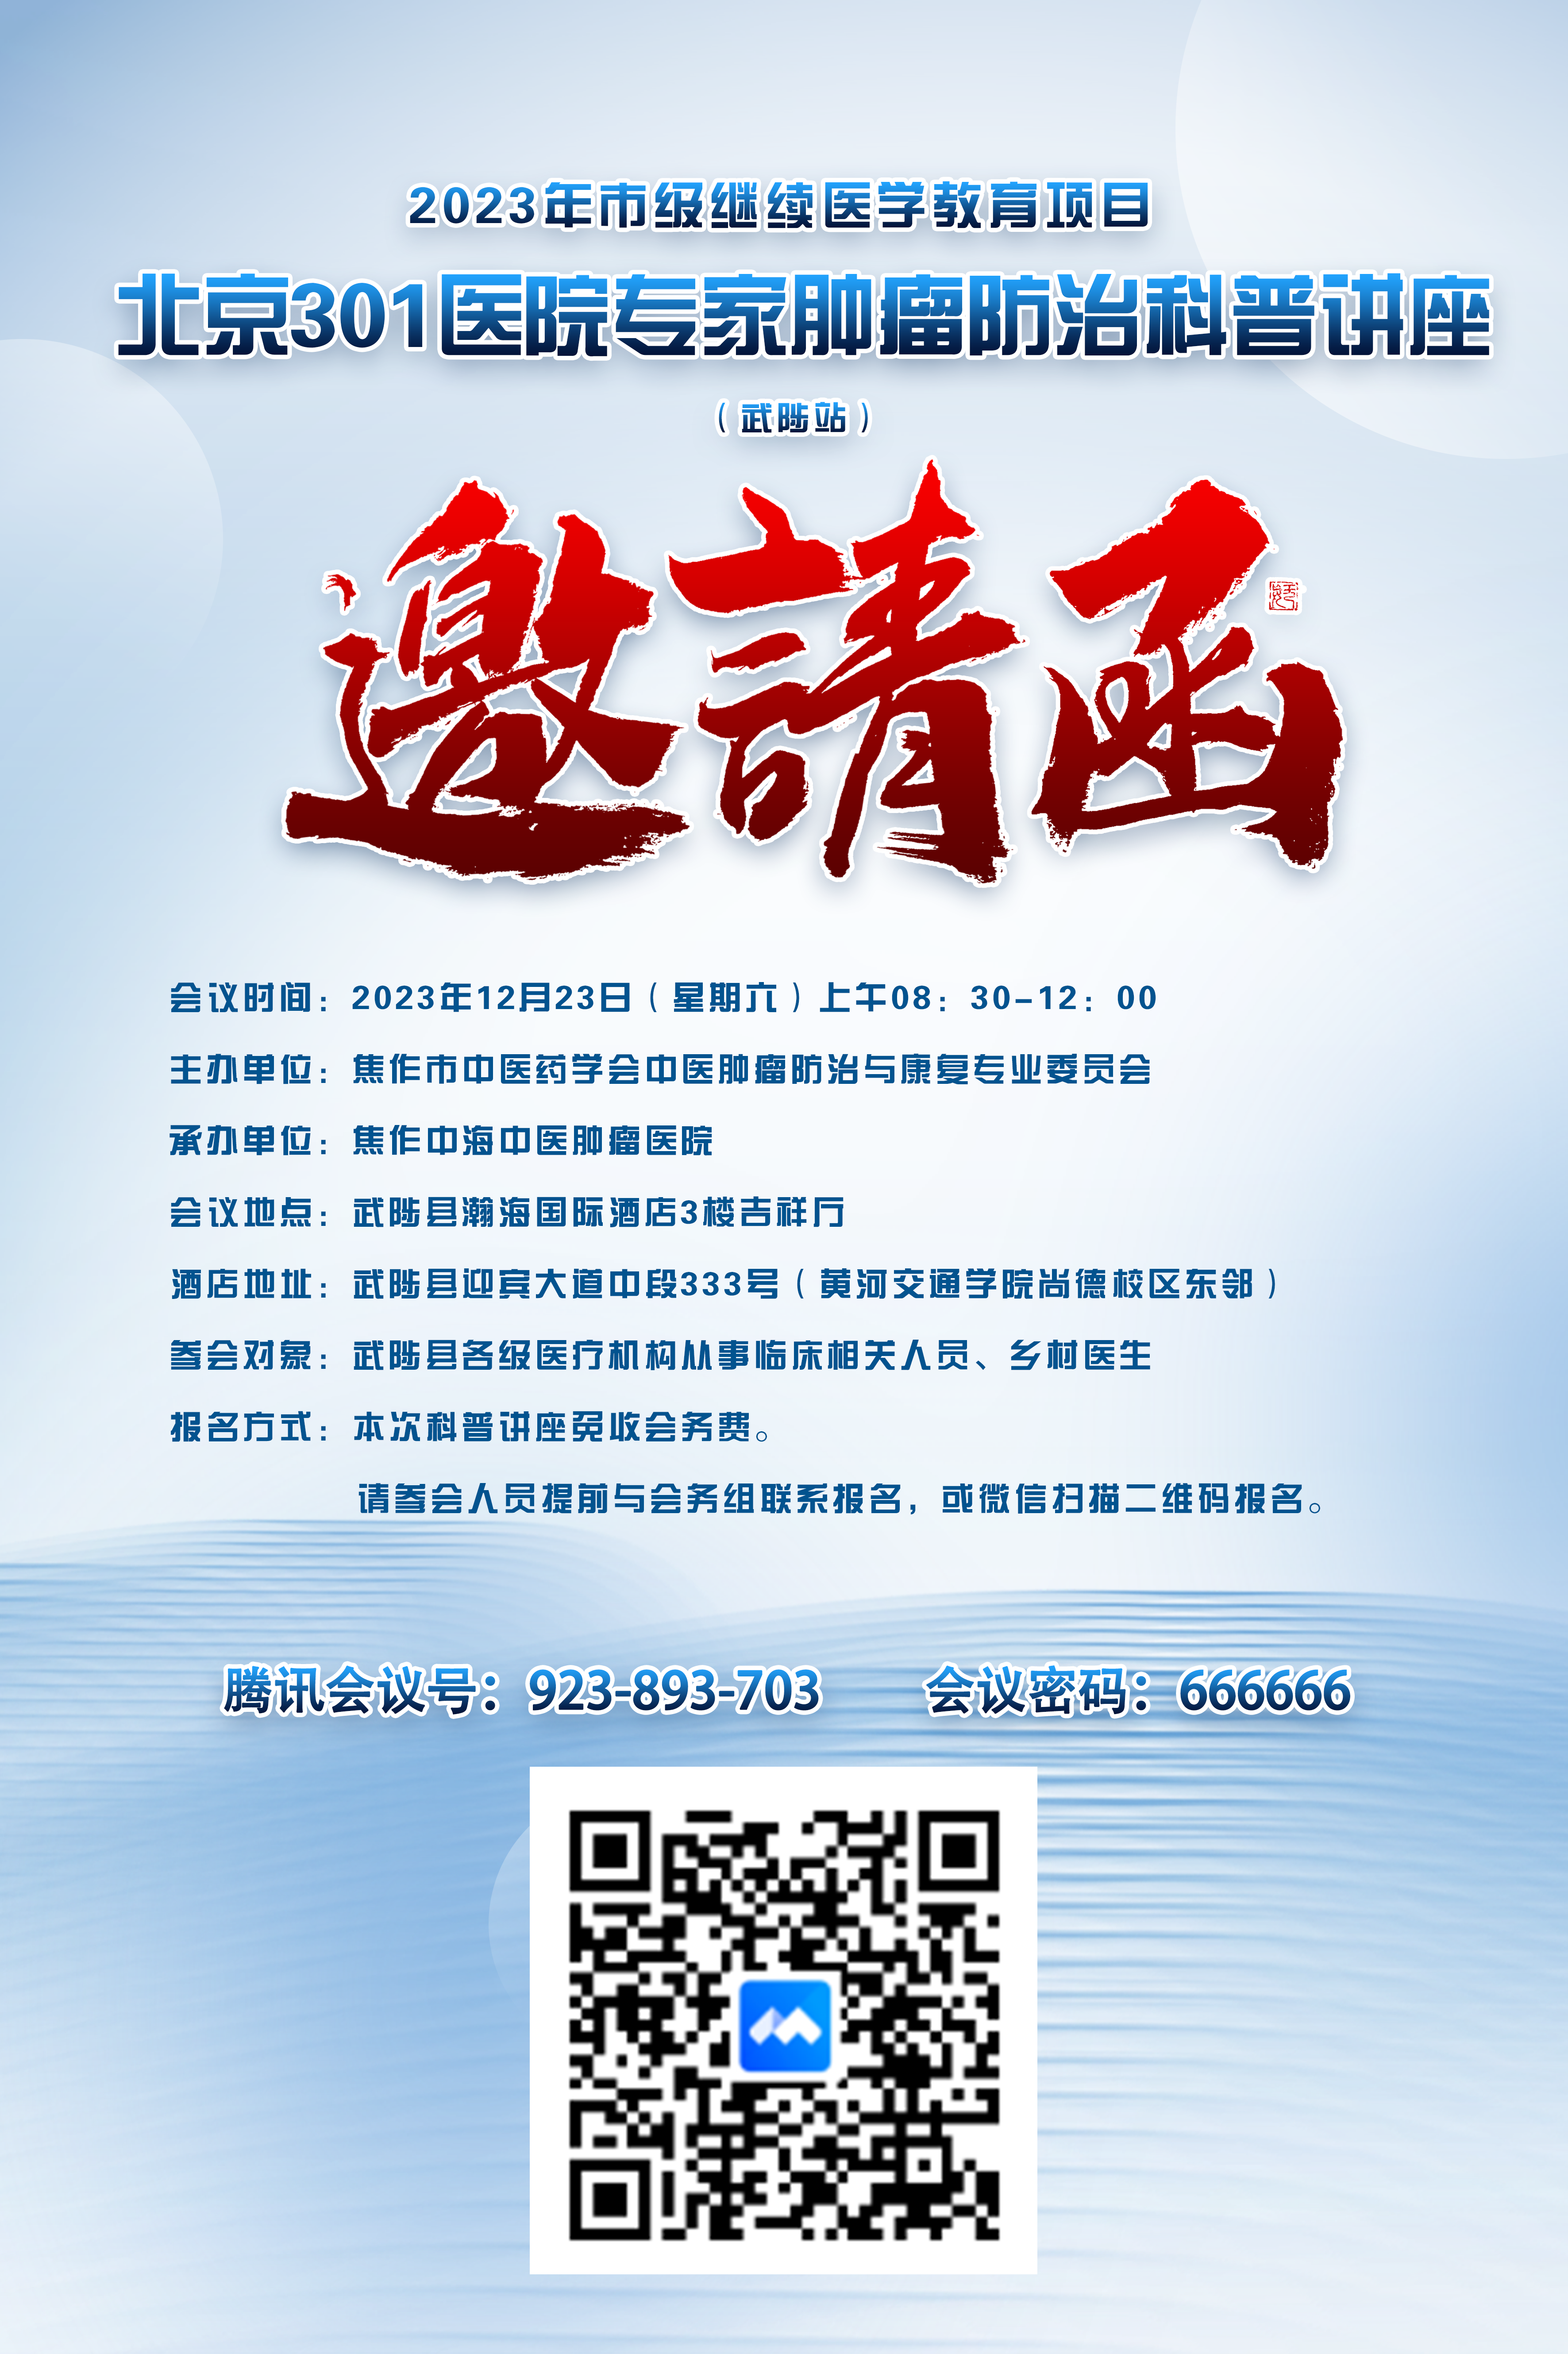 邀请您参加“北京301医院肿瘤专家肿瘤科普讲座”腾讯会议网络研讨会